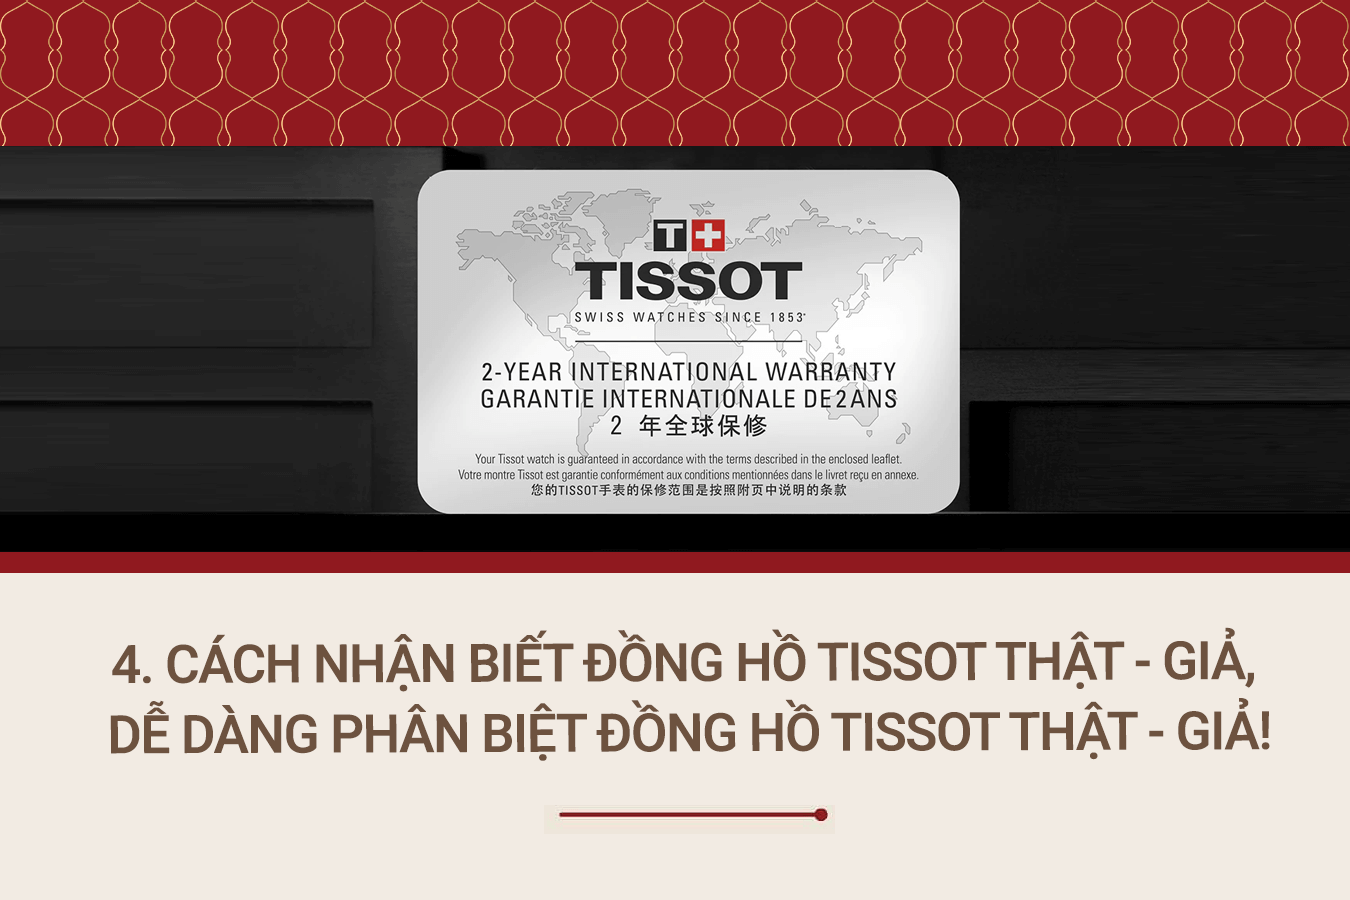 Cách nhận biết đồng hồ Tissot thật - giả, dễ dàng phân biệt đồng hồ Tissot thật - giả!